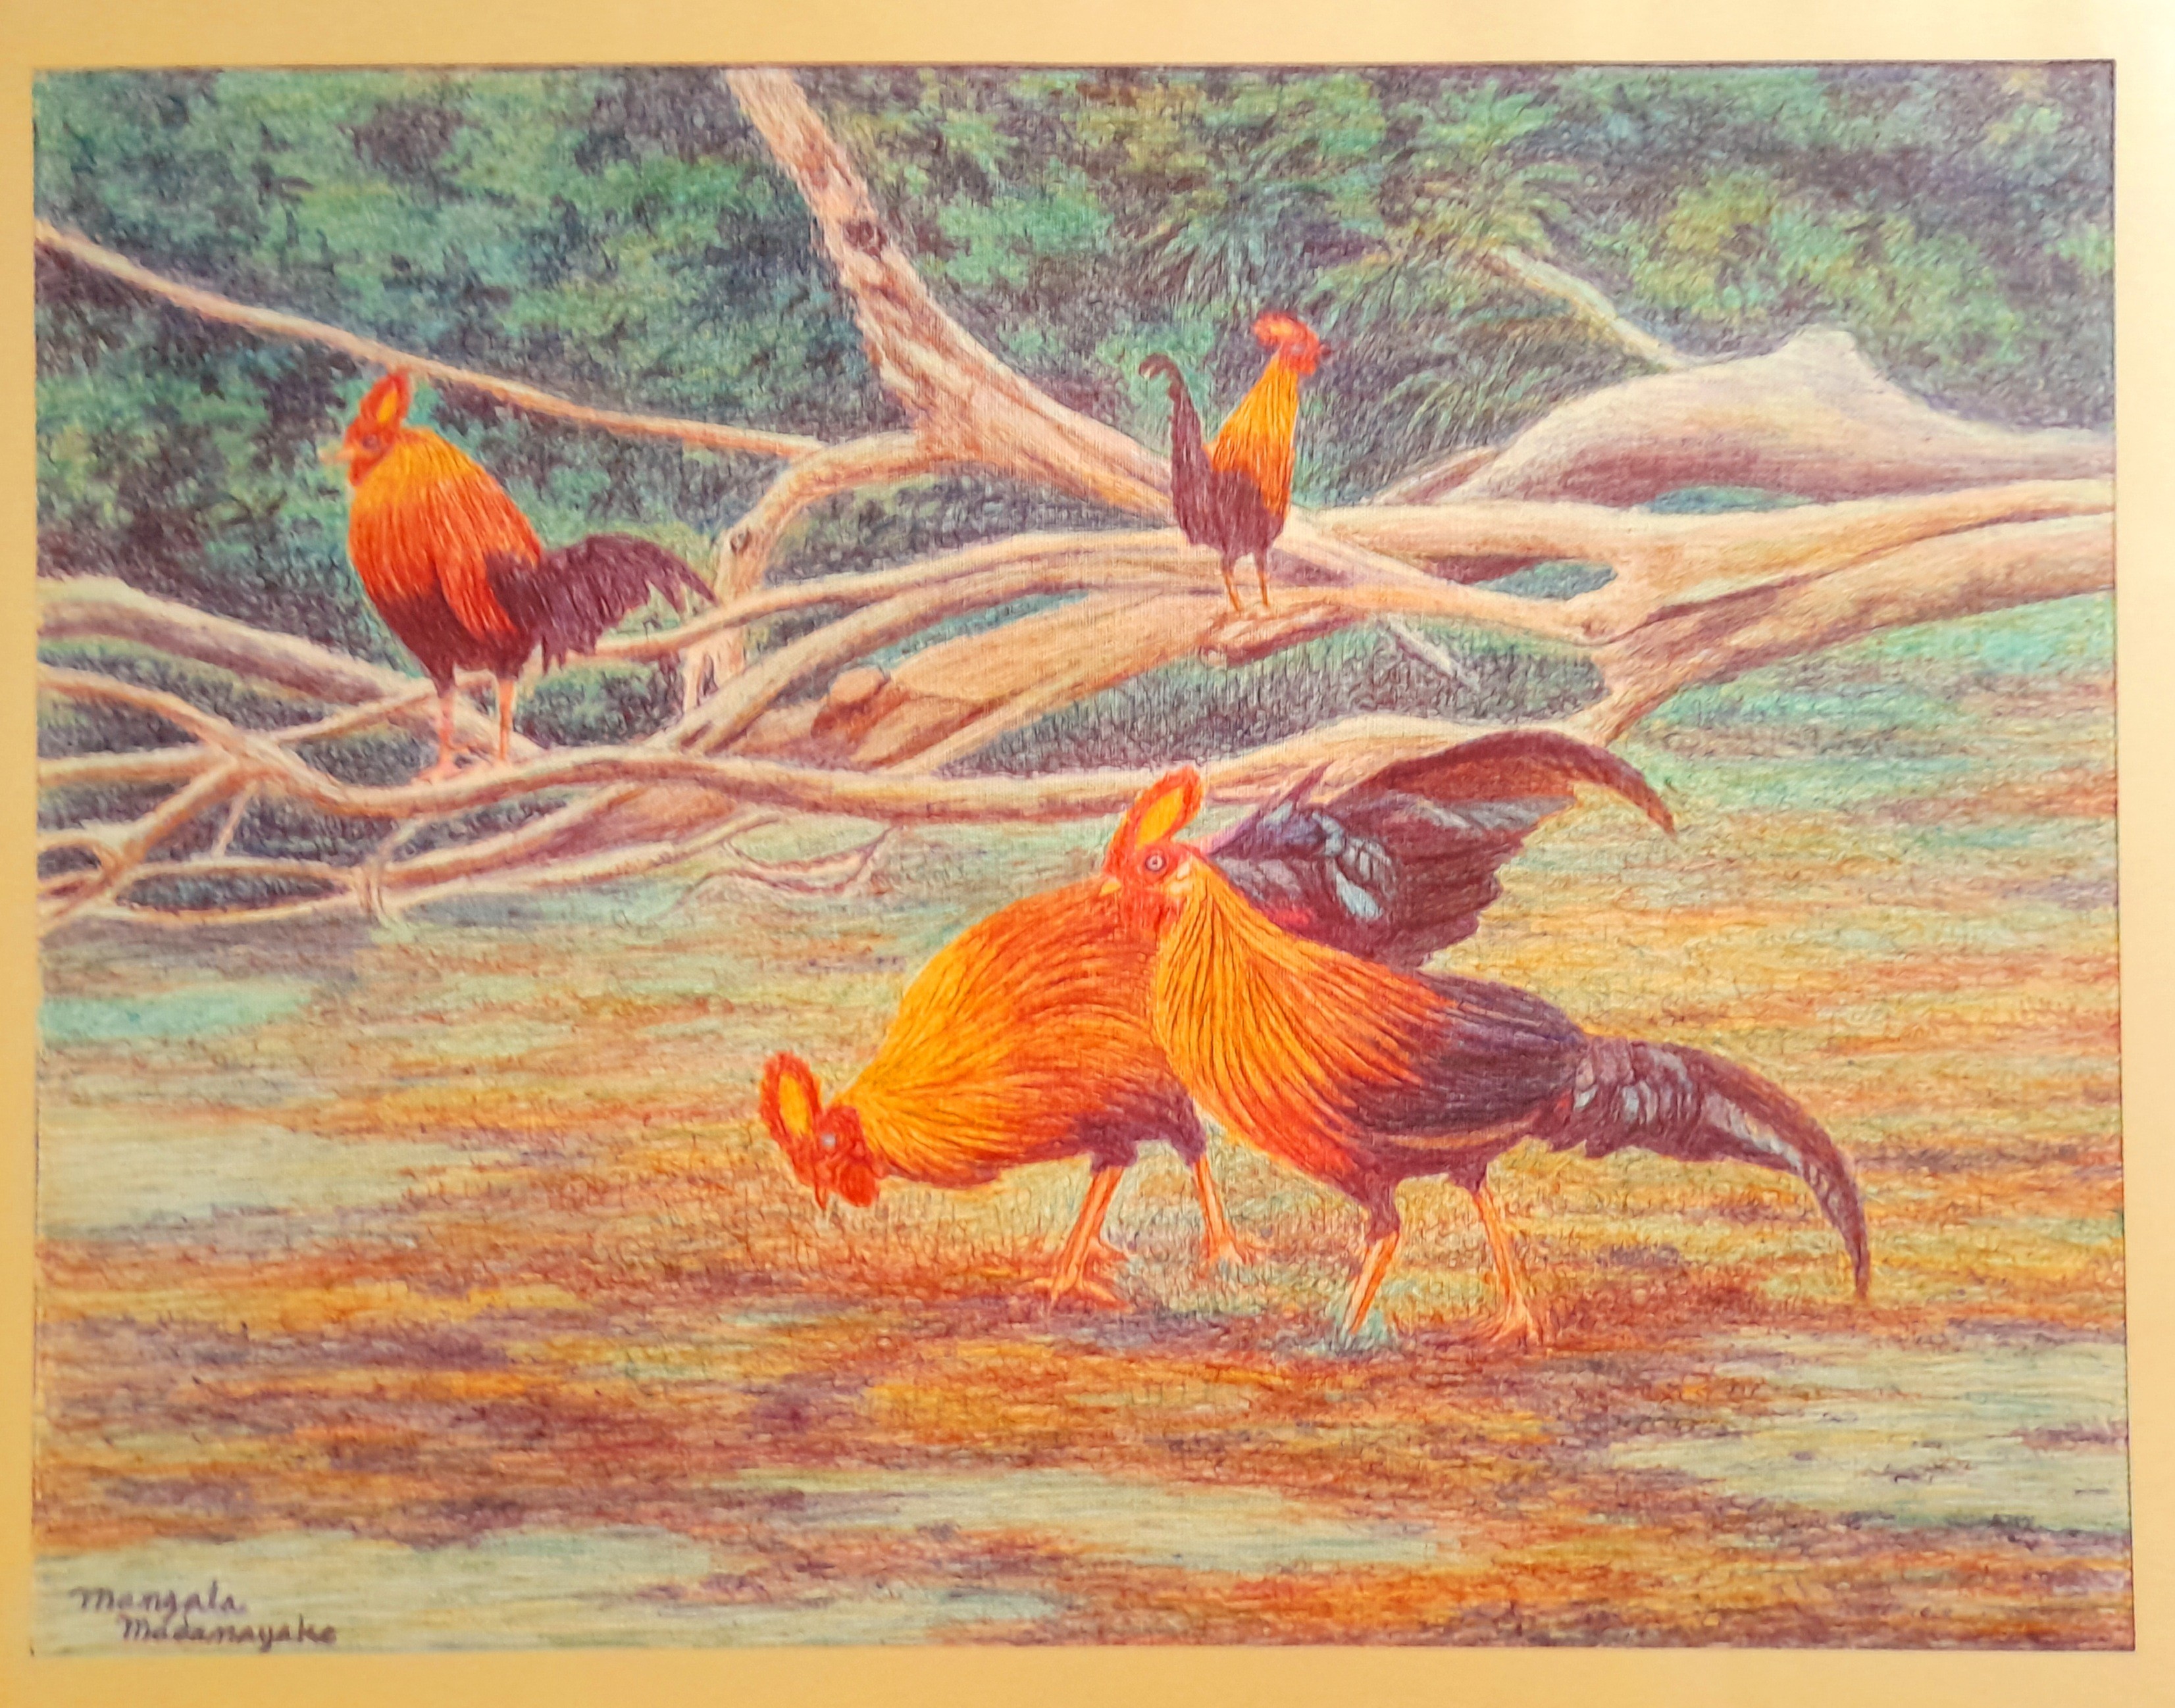 Jungle fowl by Mangala Madanayake